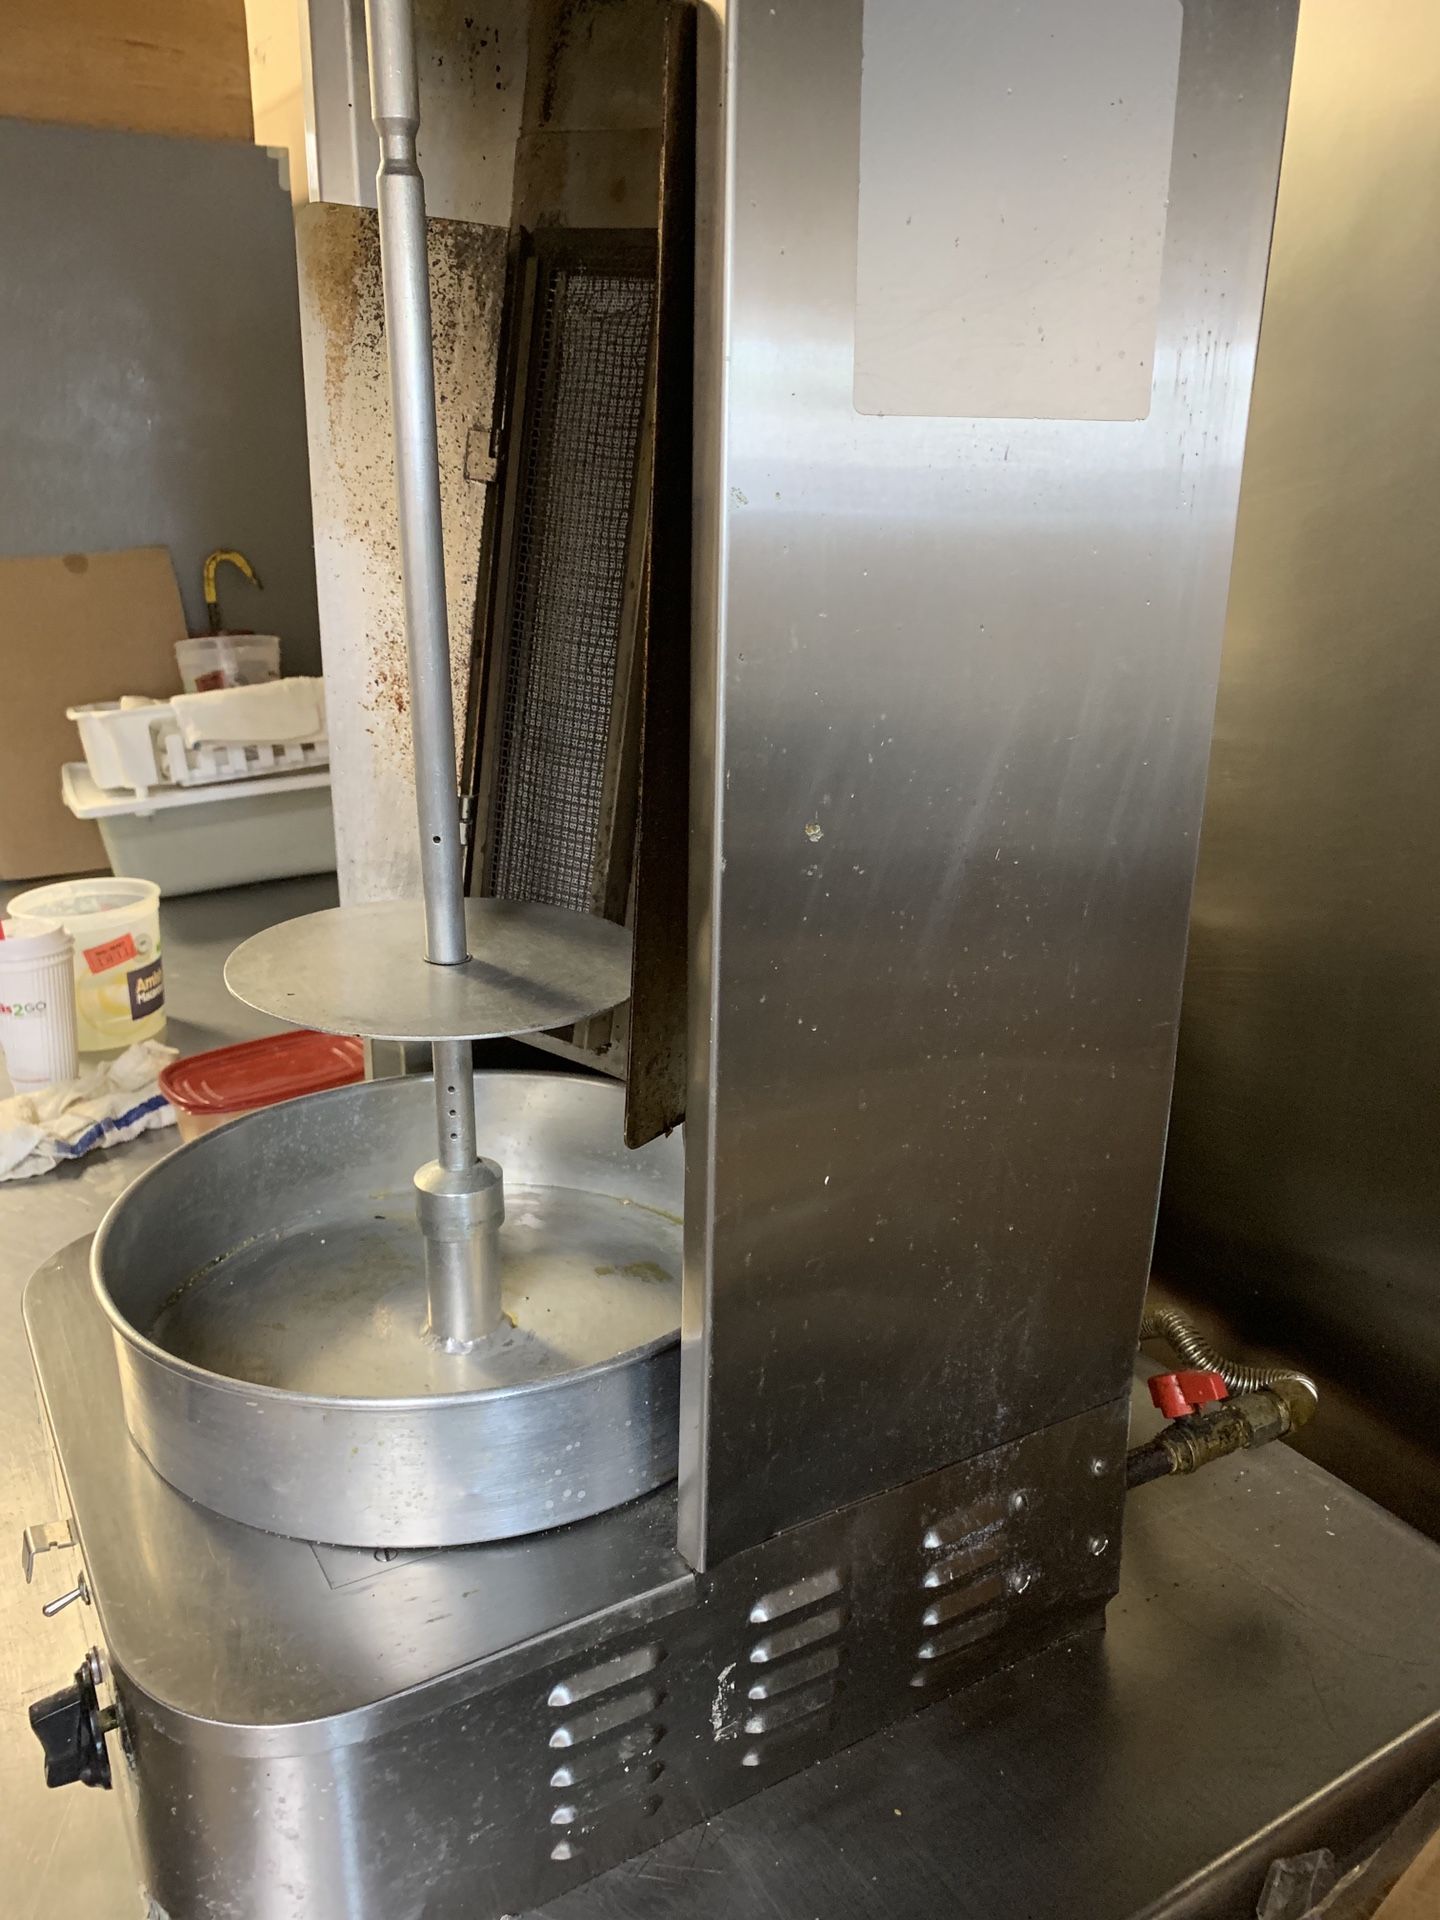 Gyro/shawarma machine